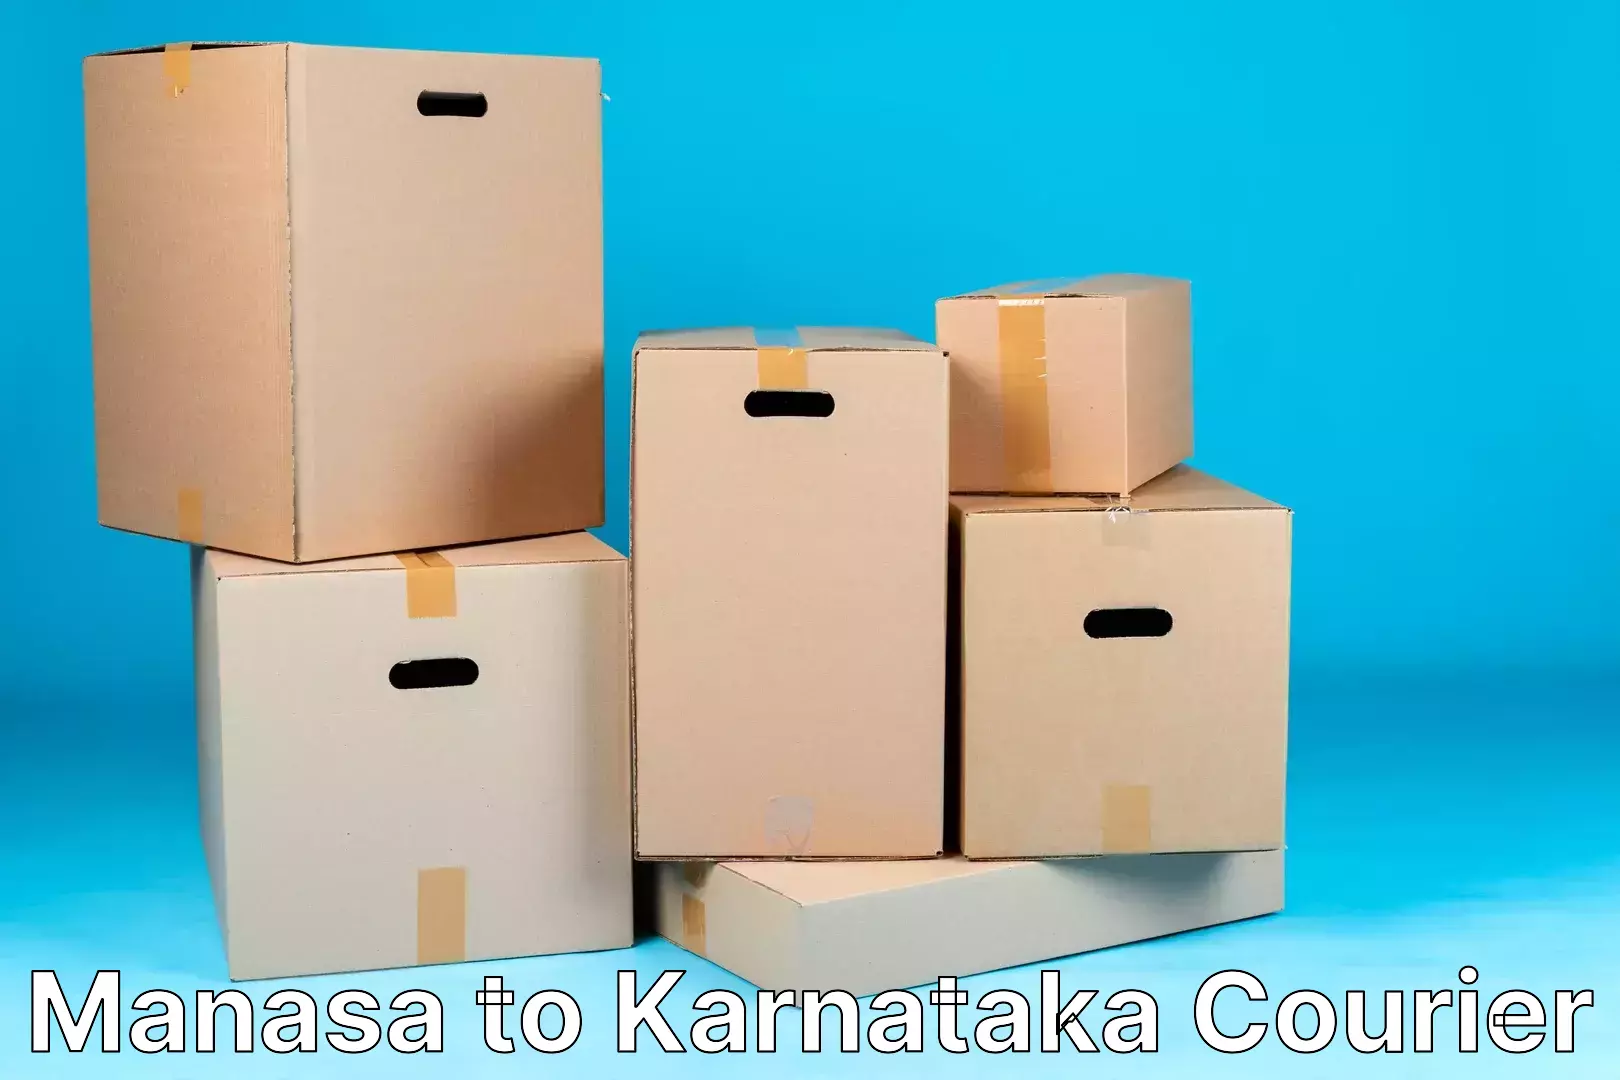 Urgent courier needs in Manasa to Karnataka